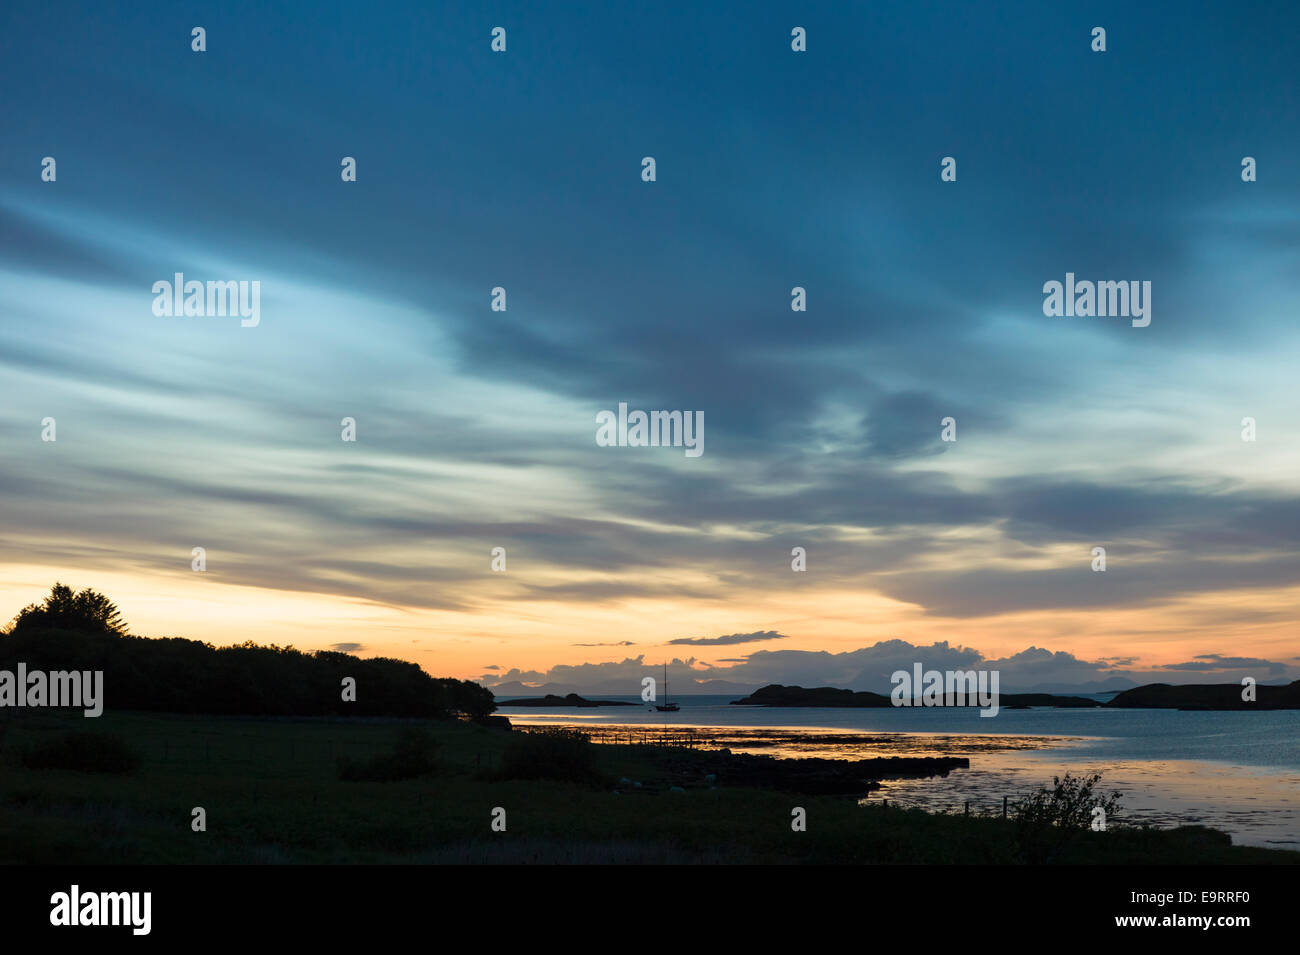 Skyscene de coucher de soleil sur l'bateau de pêche sur le Loch Dunvegan, l'île de Skye en Ecosse Banque D'Images